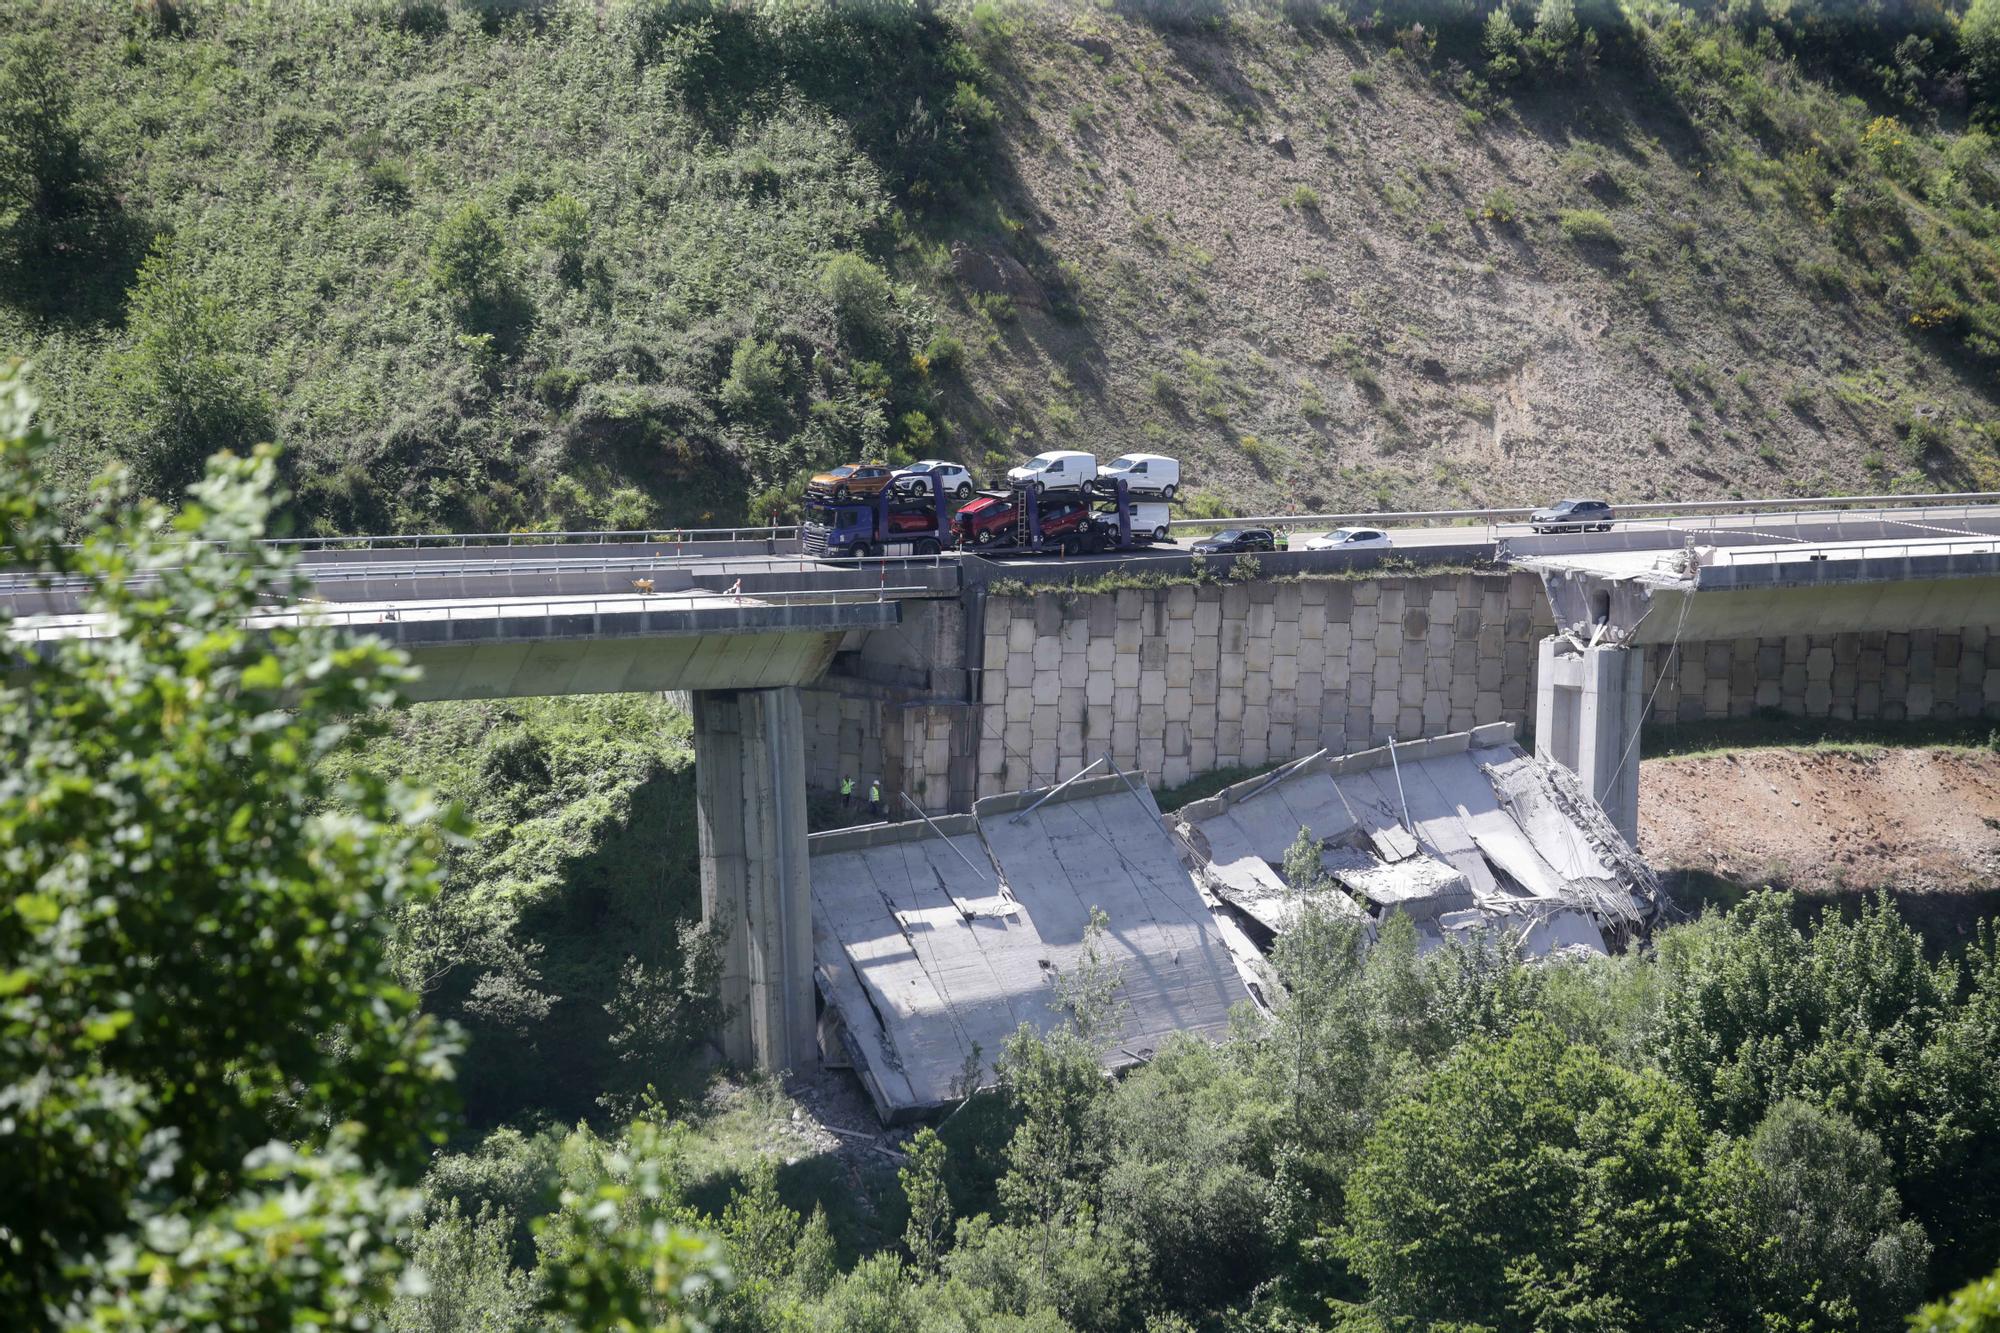 Un problema oculto en el viaducto de la A6, posible causa de un colapso inédito en la ingeniería civil estatal